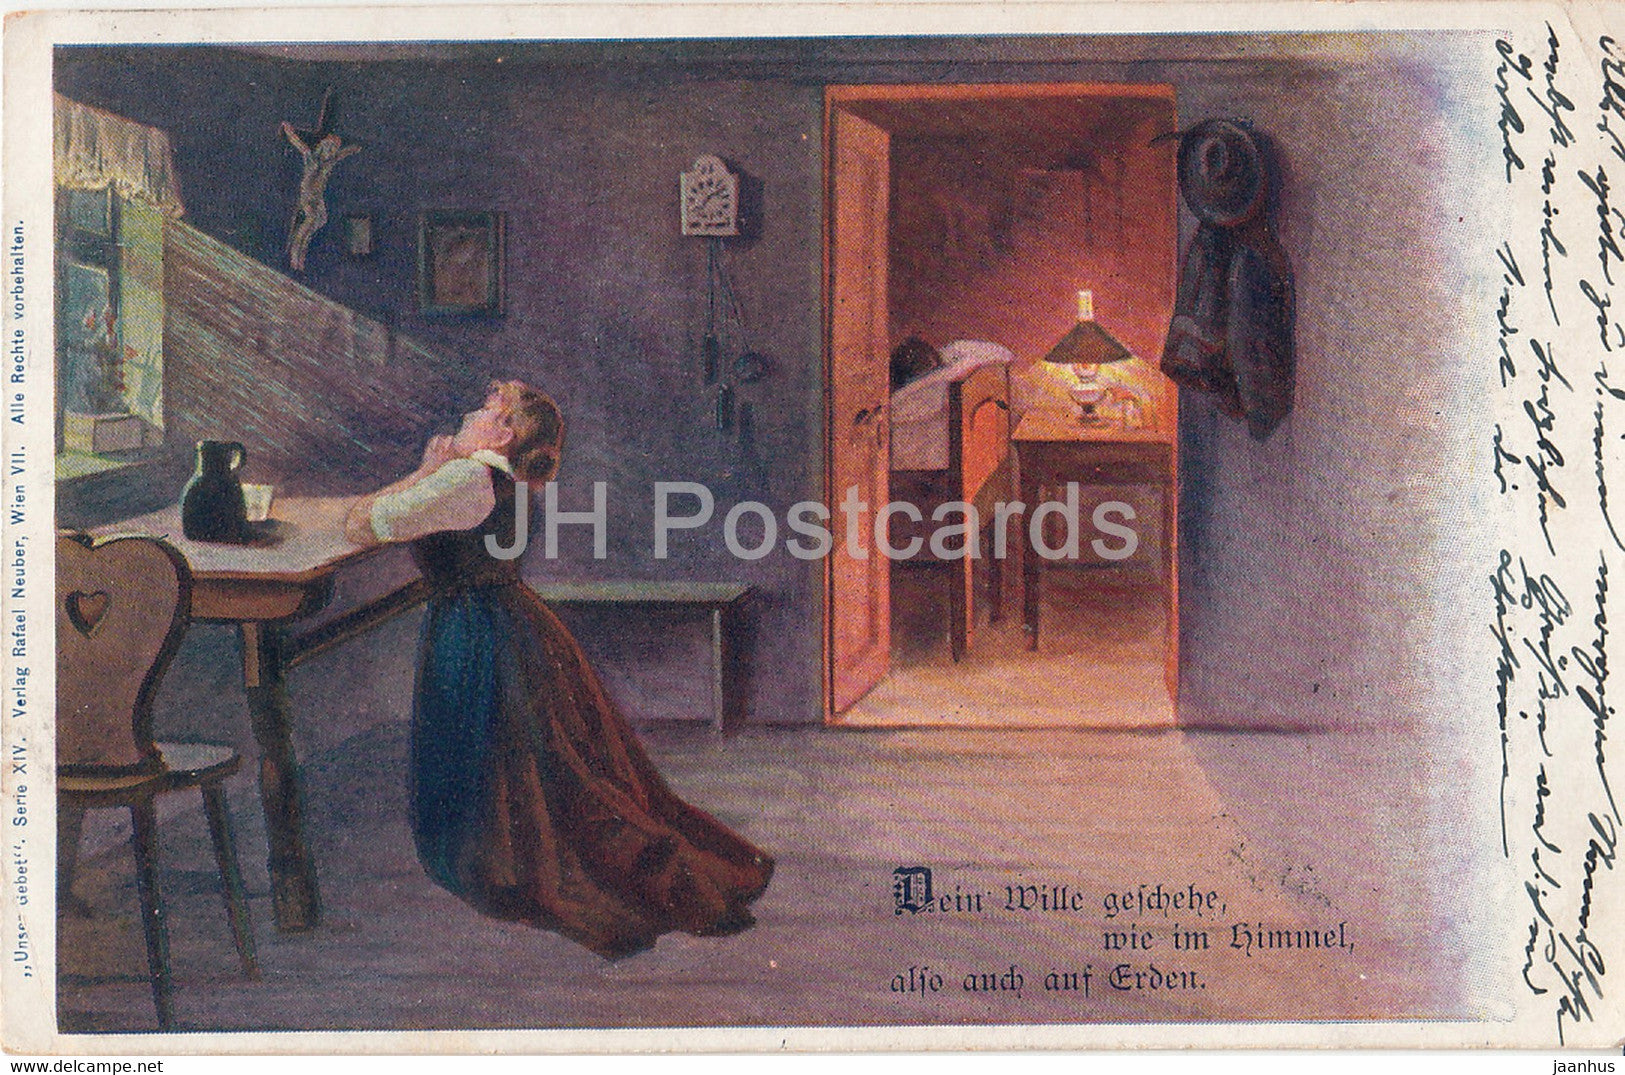 Dein Wille Geschehe wie im Himmel also auch auf Erden - Unser Gebet - illustration - old postcard - 1901 - Austria  used - JH Postcards